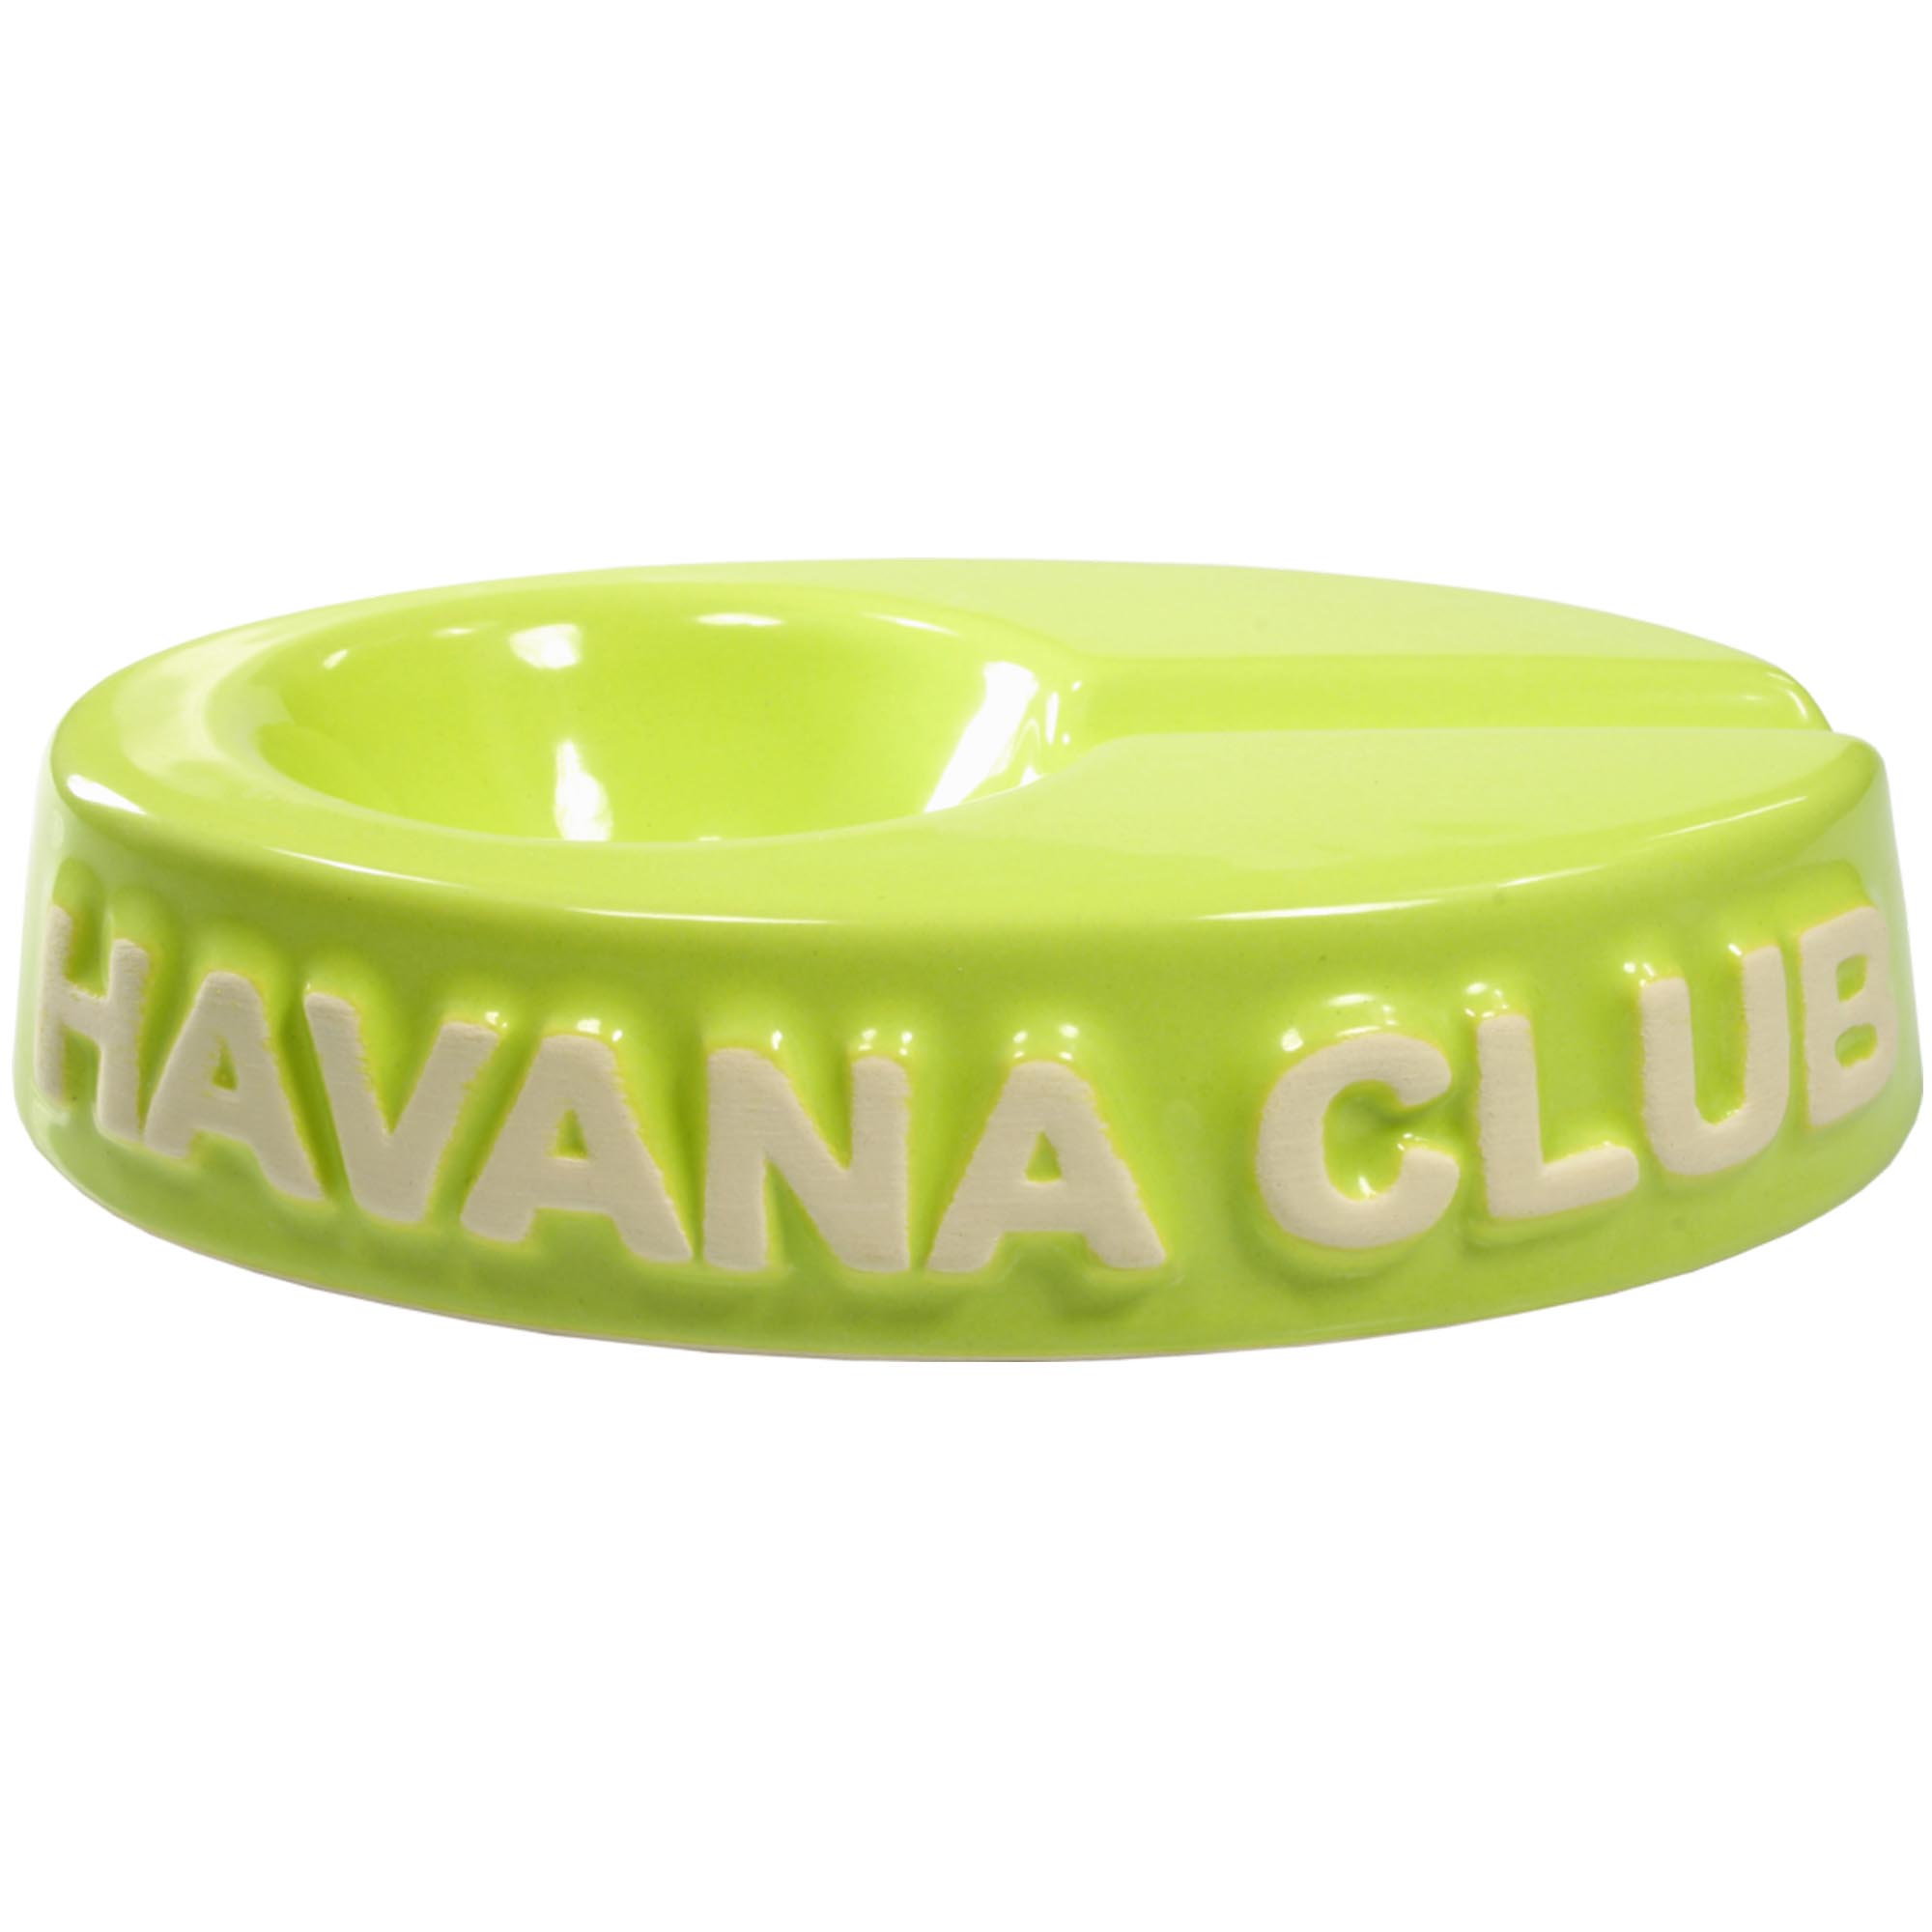 Club Havana Chico Hellgrün Ascher